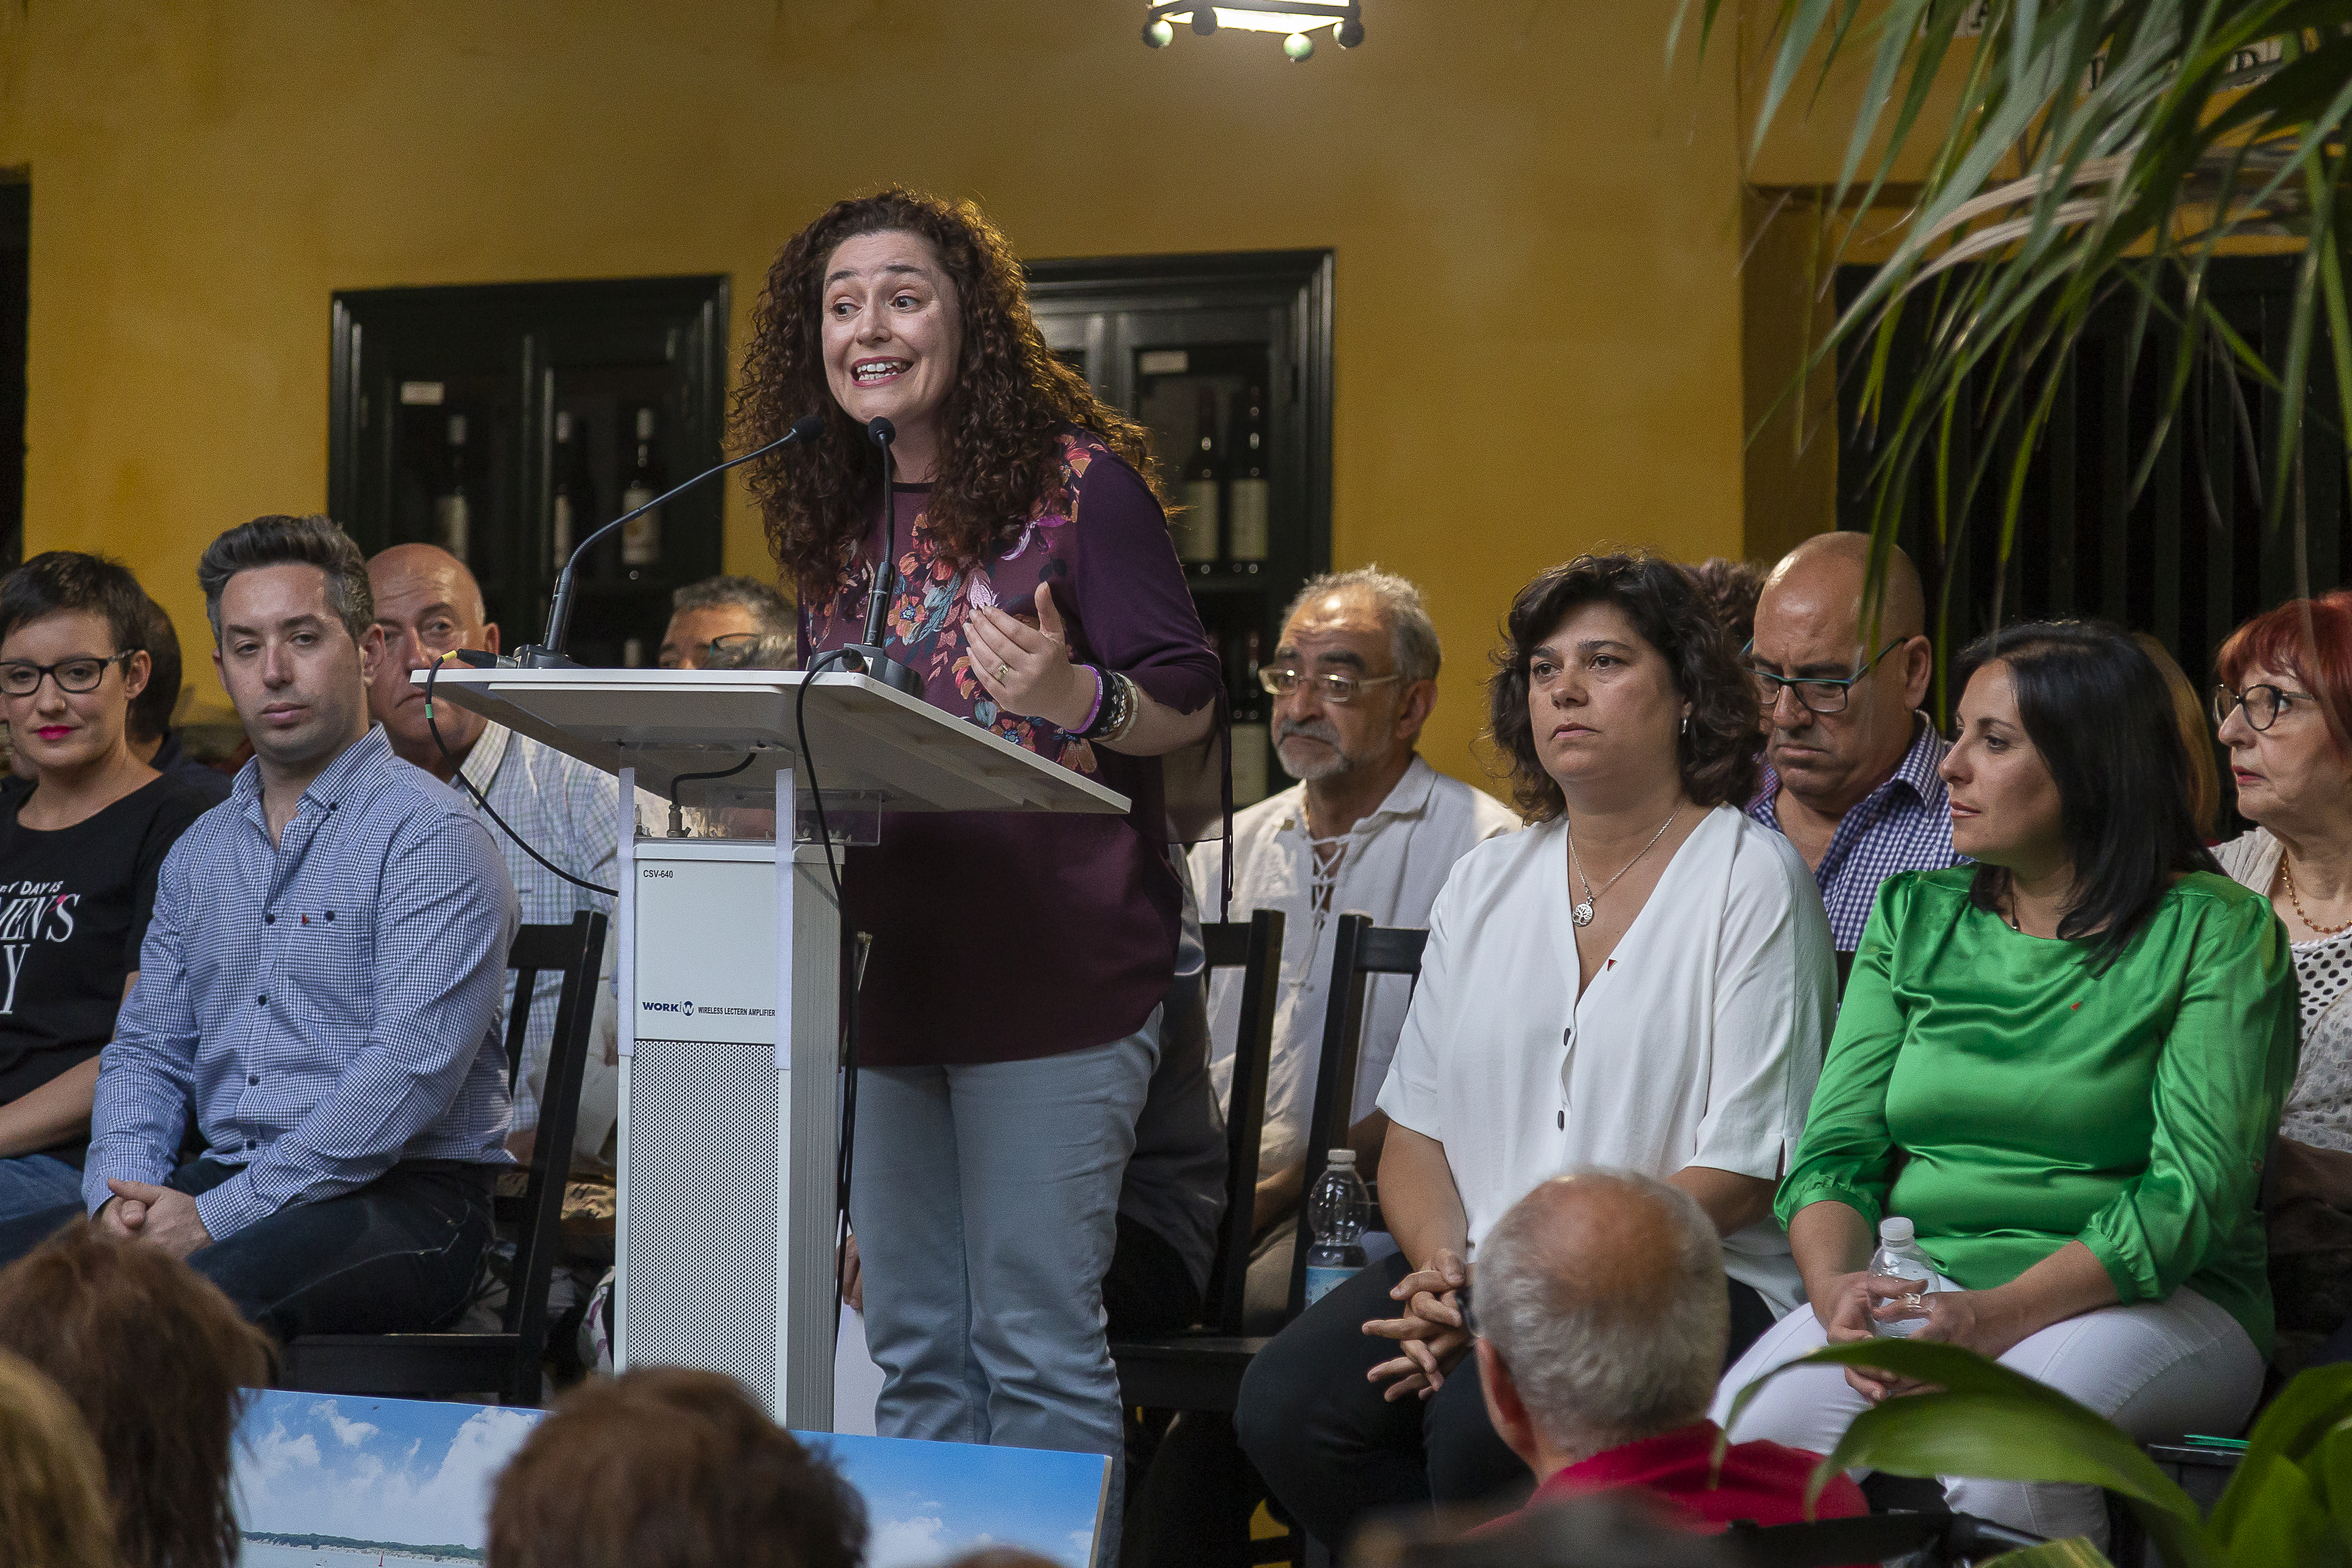 Nieto defiende una candidatura de IU en Sanlúcar “honesta, decente y con las ideas muy claras sobre lo que necesita la gente de esta ciudad”